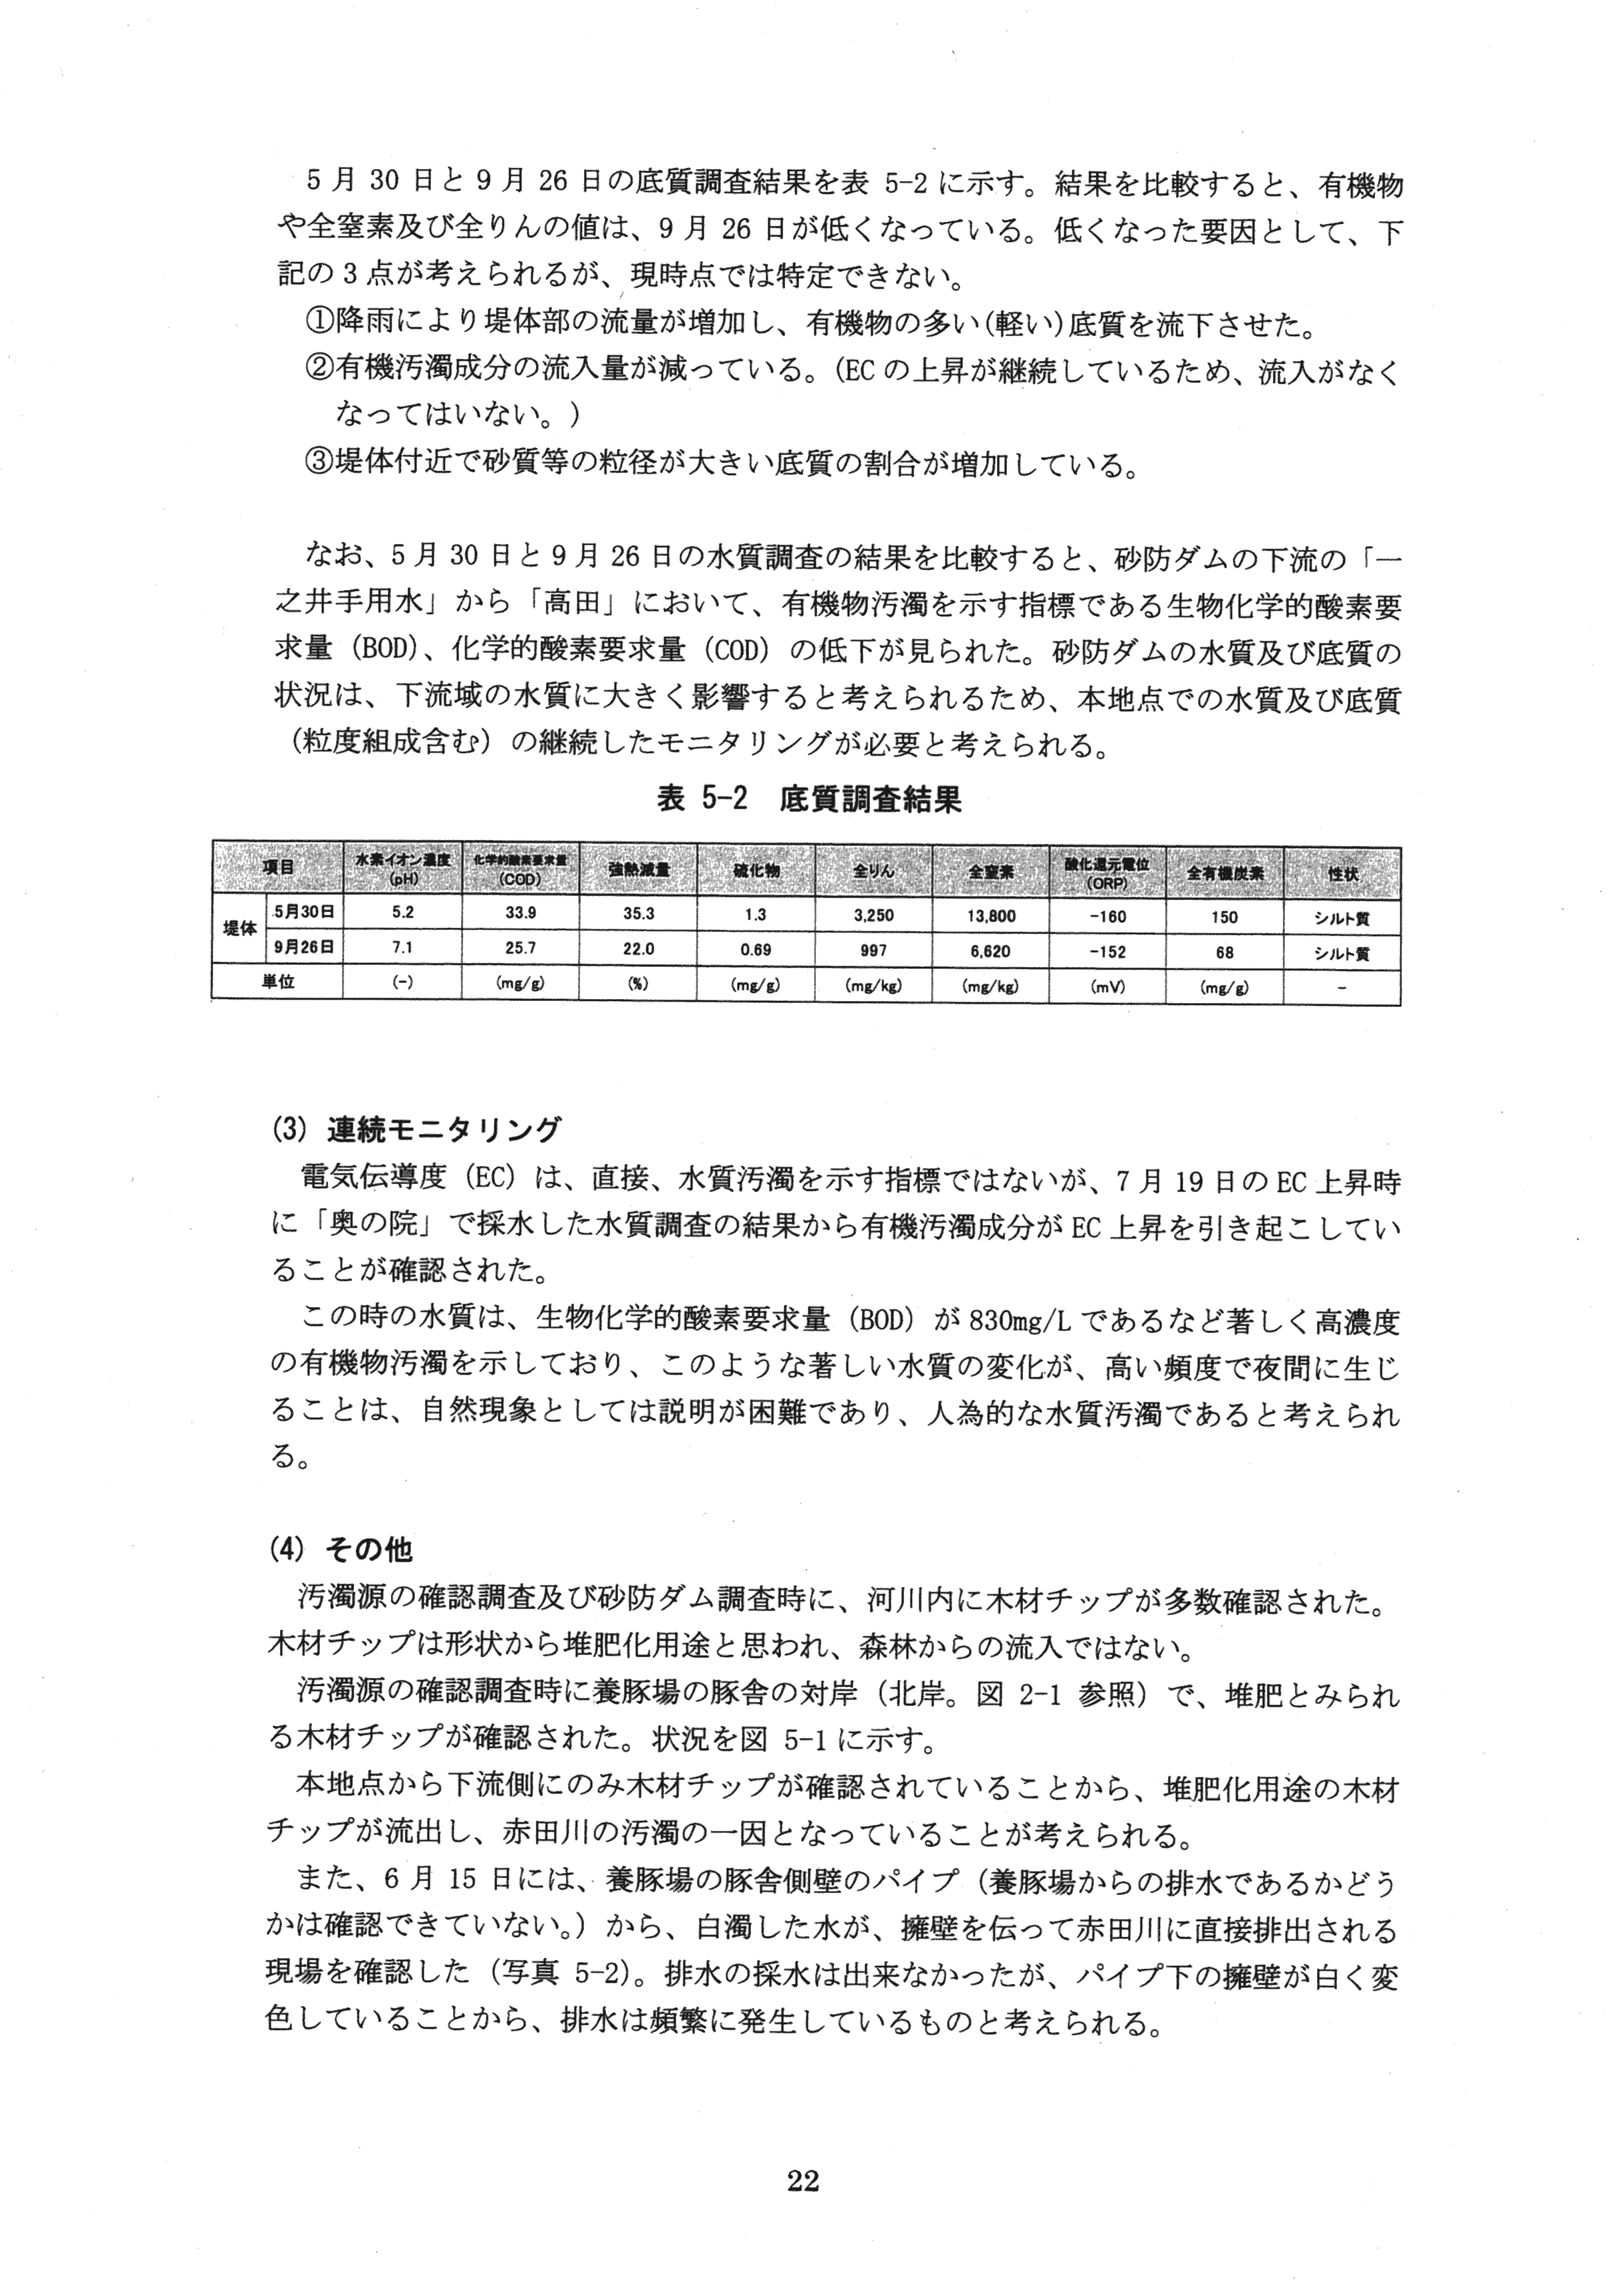 平成29年11月-赤田川水質汚濁状況調査報告書-24